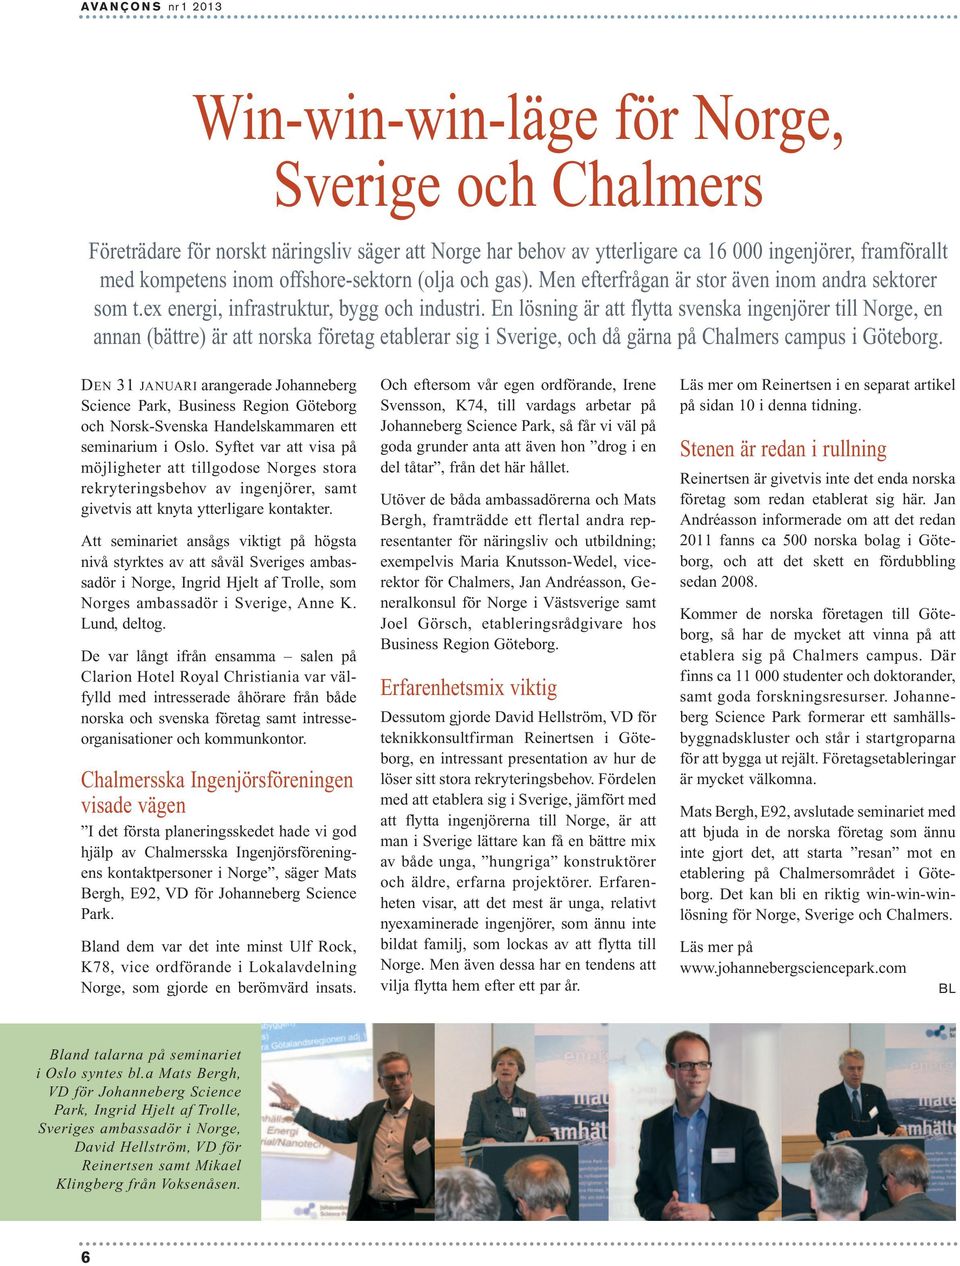 En lösning är att flytta svenska ingenjörer till Norge, en annan (bättre) är att norska företag etablerar sig i Sverige, och då gärna på Chalmers campus i Göteborg.